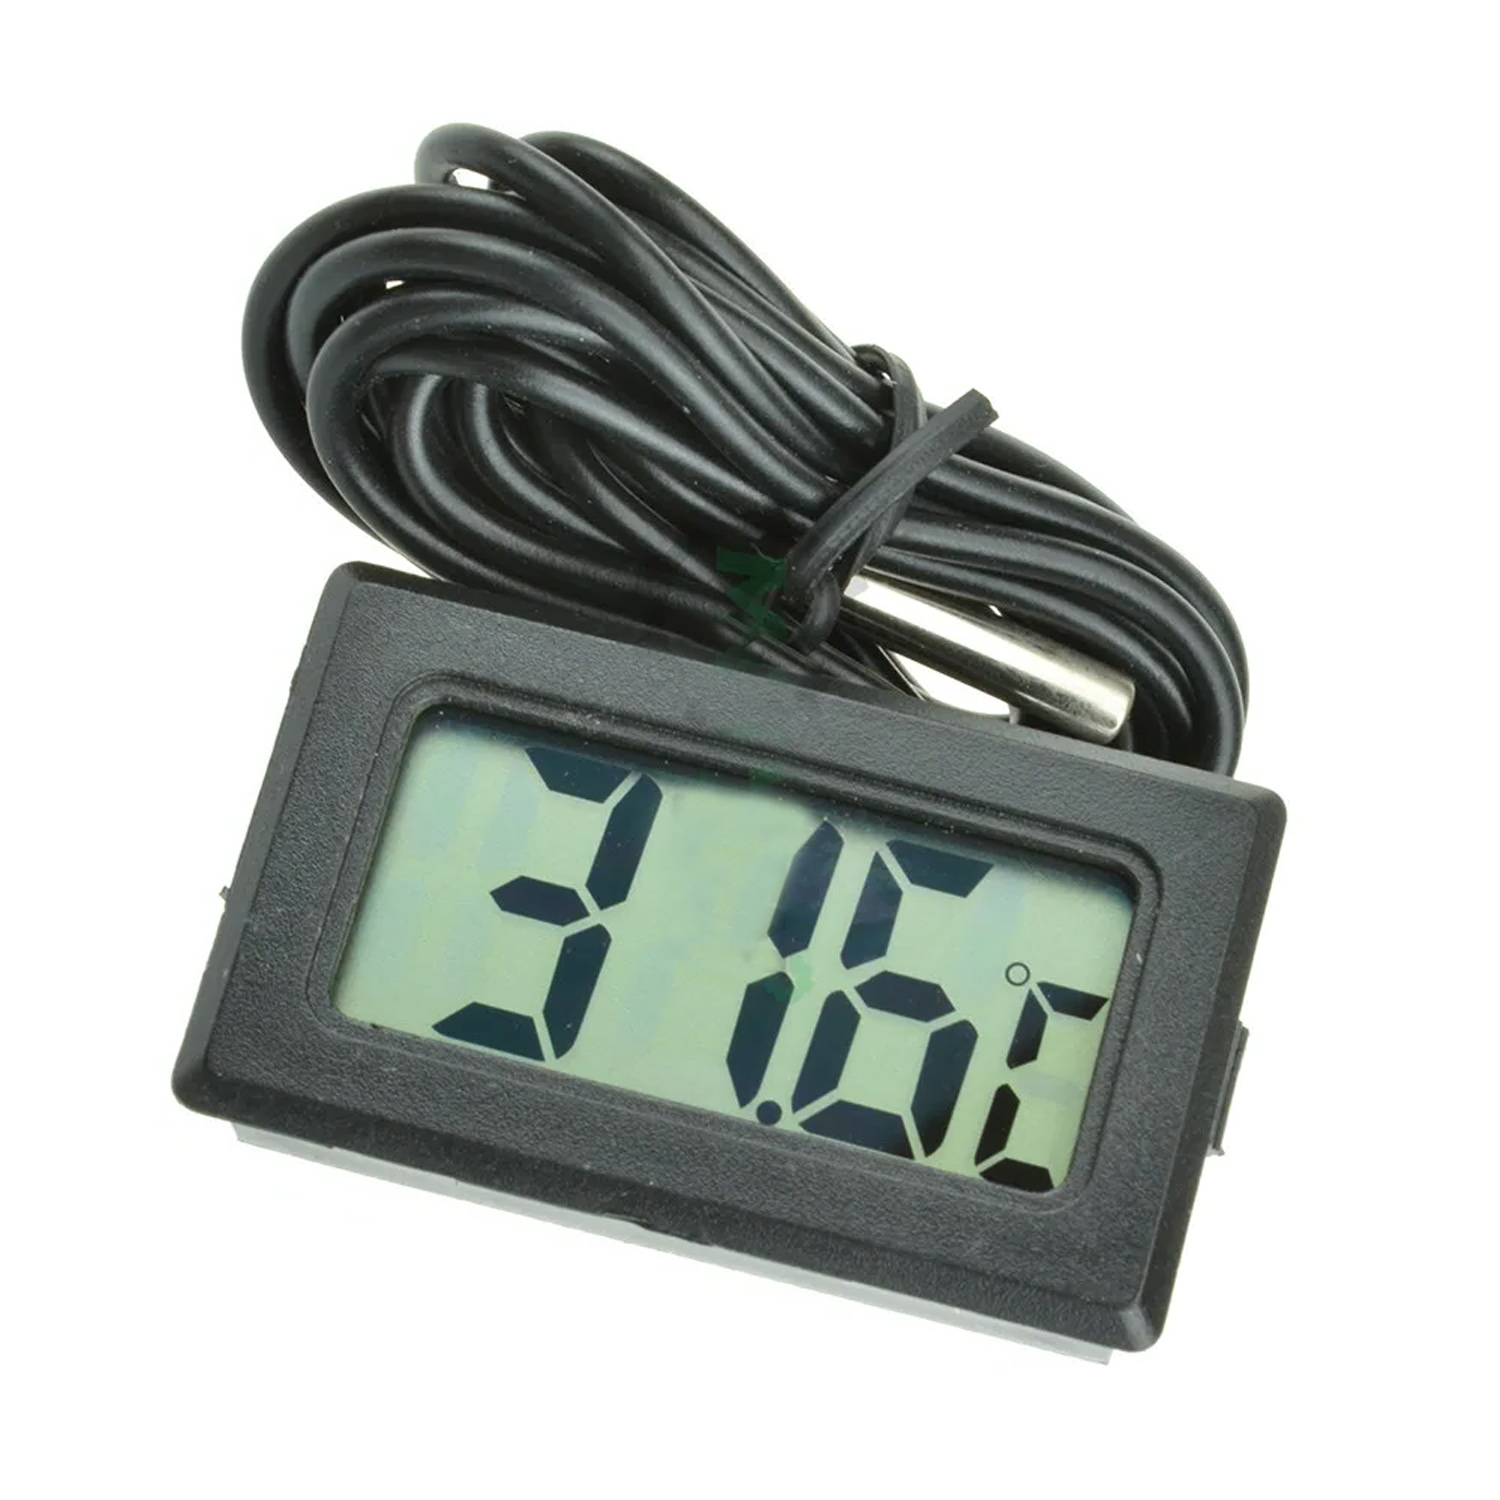 Цифровой термометр TPM-10 с выносным датчиком 2м. Черный, фото